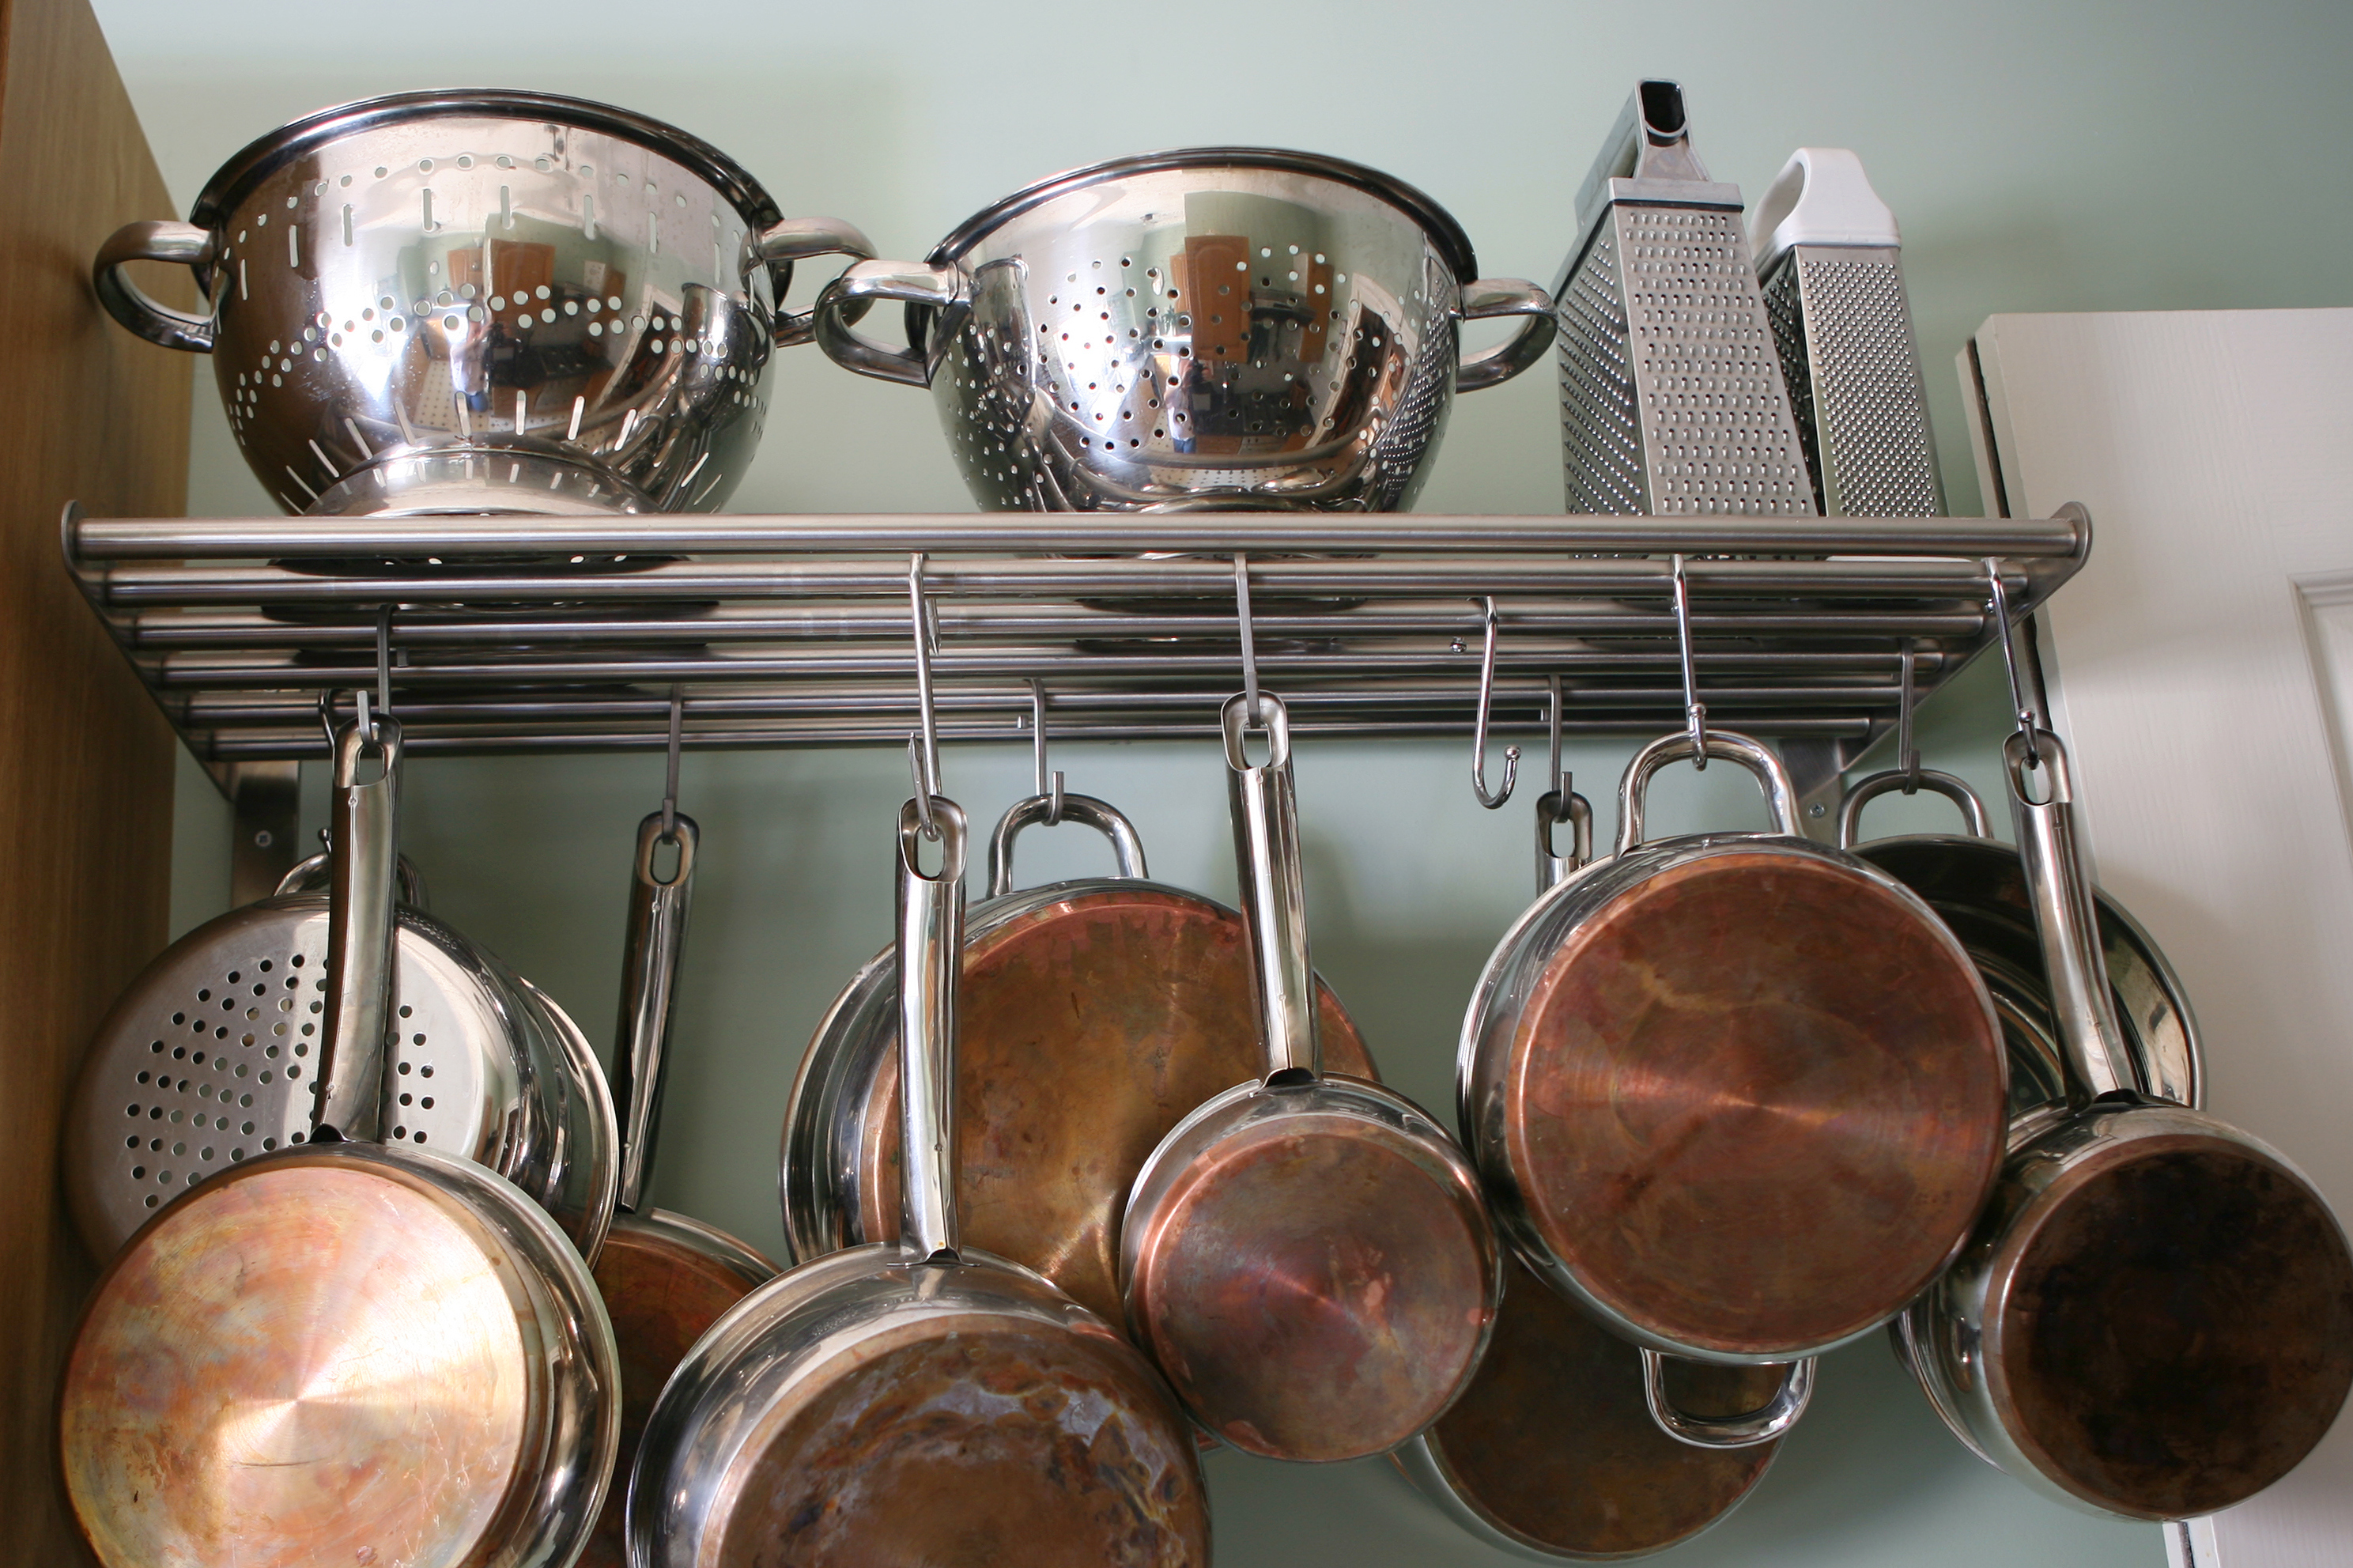 diepvries Einde Zelfrespect 9 tips voor een georganiseerde keuken - Culy